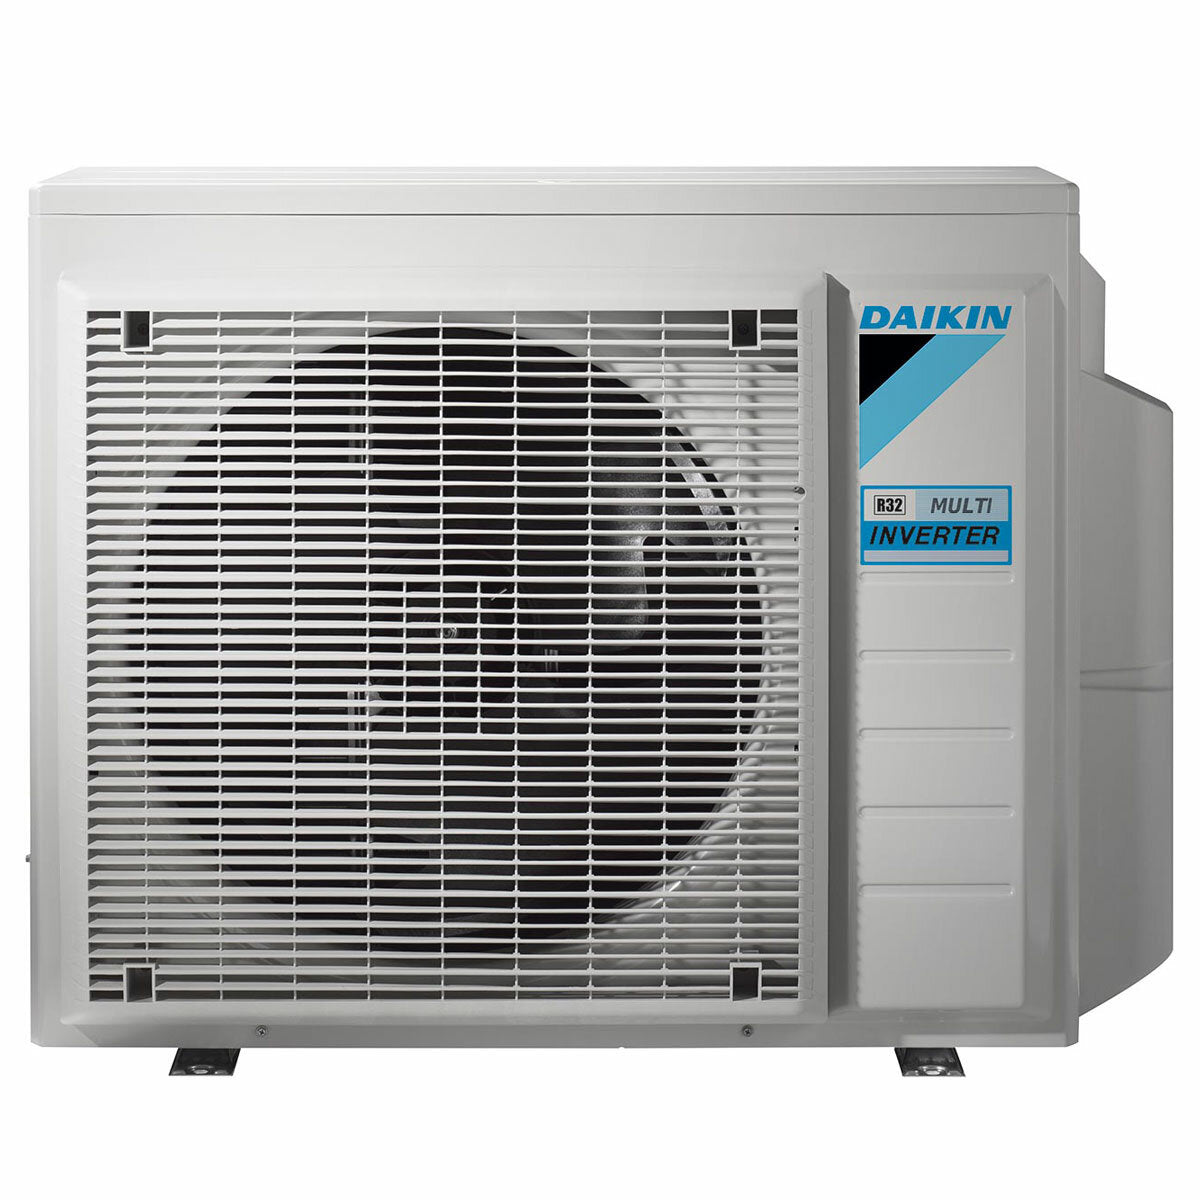 Daikin Emura 3 air conditioner penta split 9000+9000+9000+9000+18000 BTU inverter A++ wifi outdoor unit 7.8 kW Silver